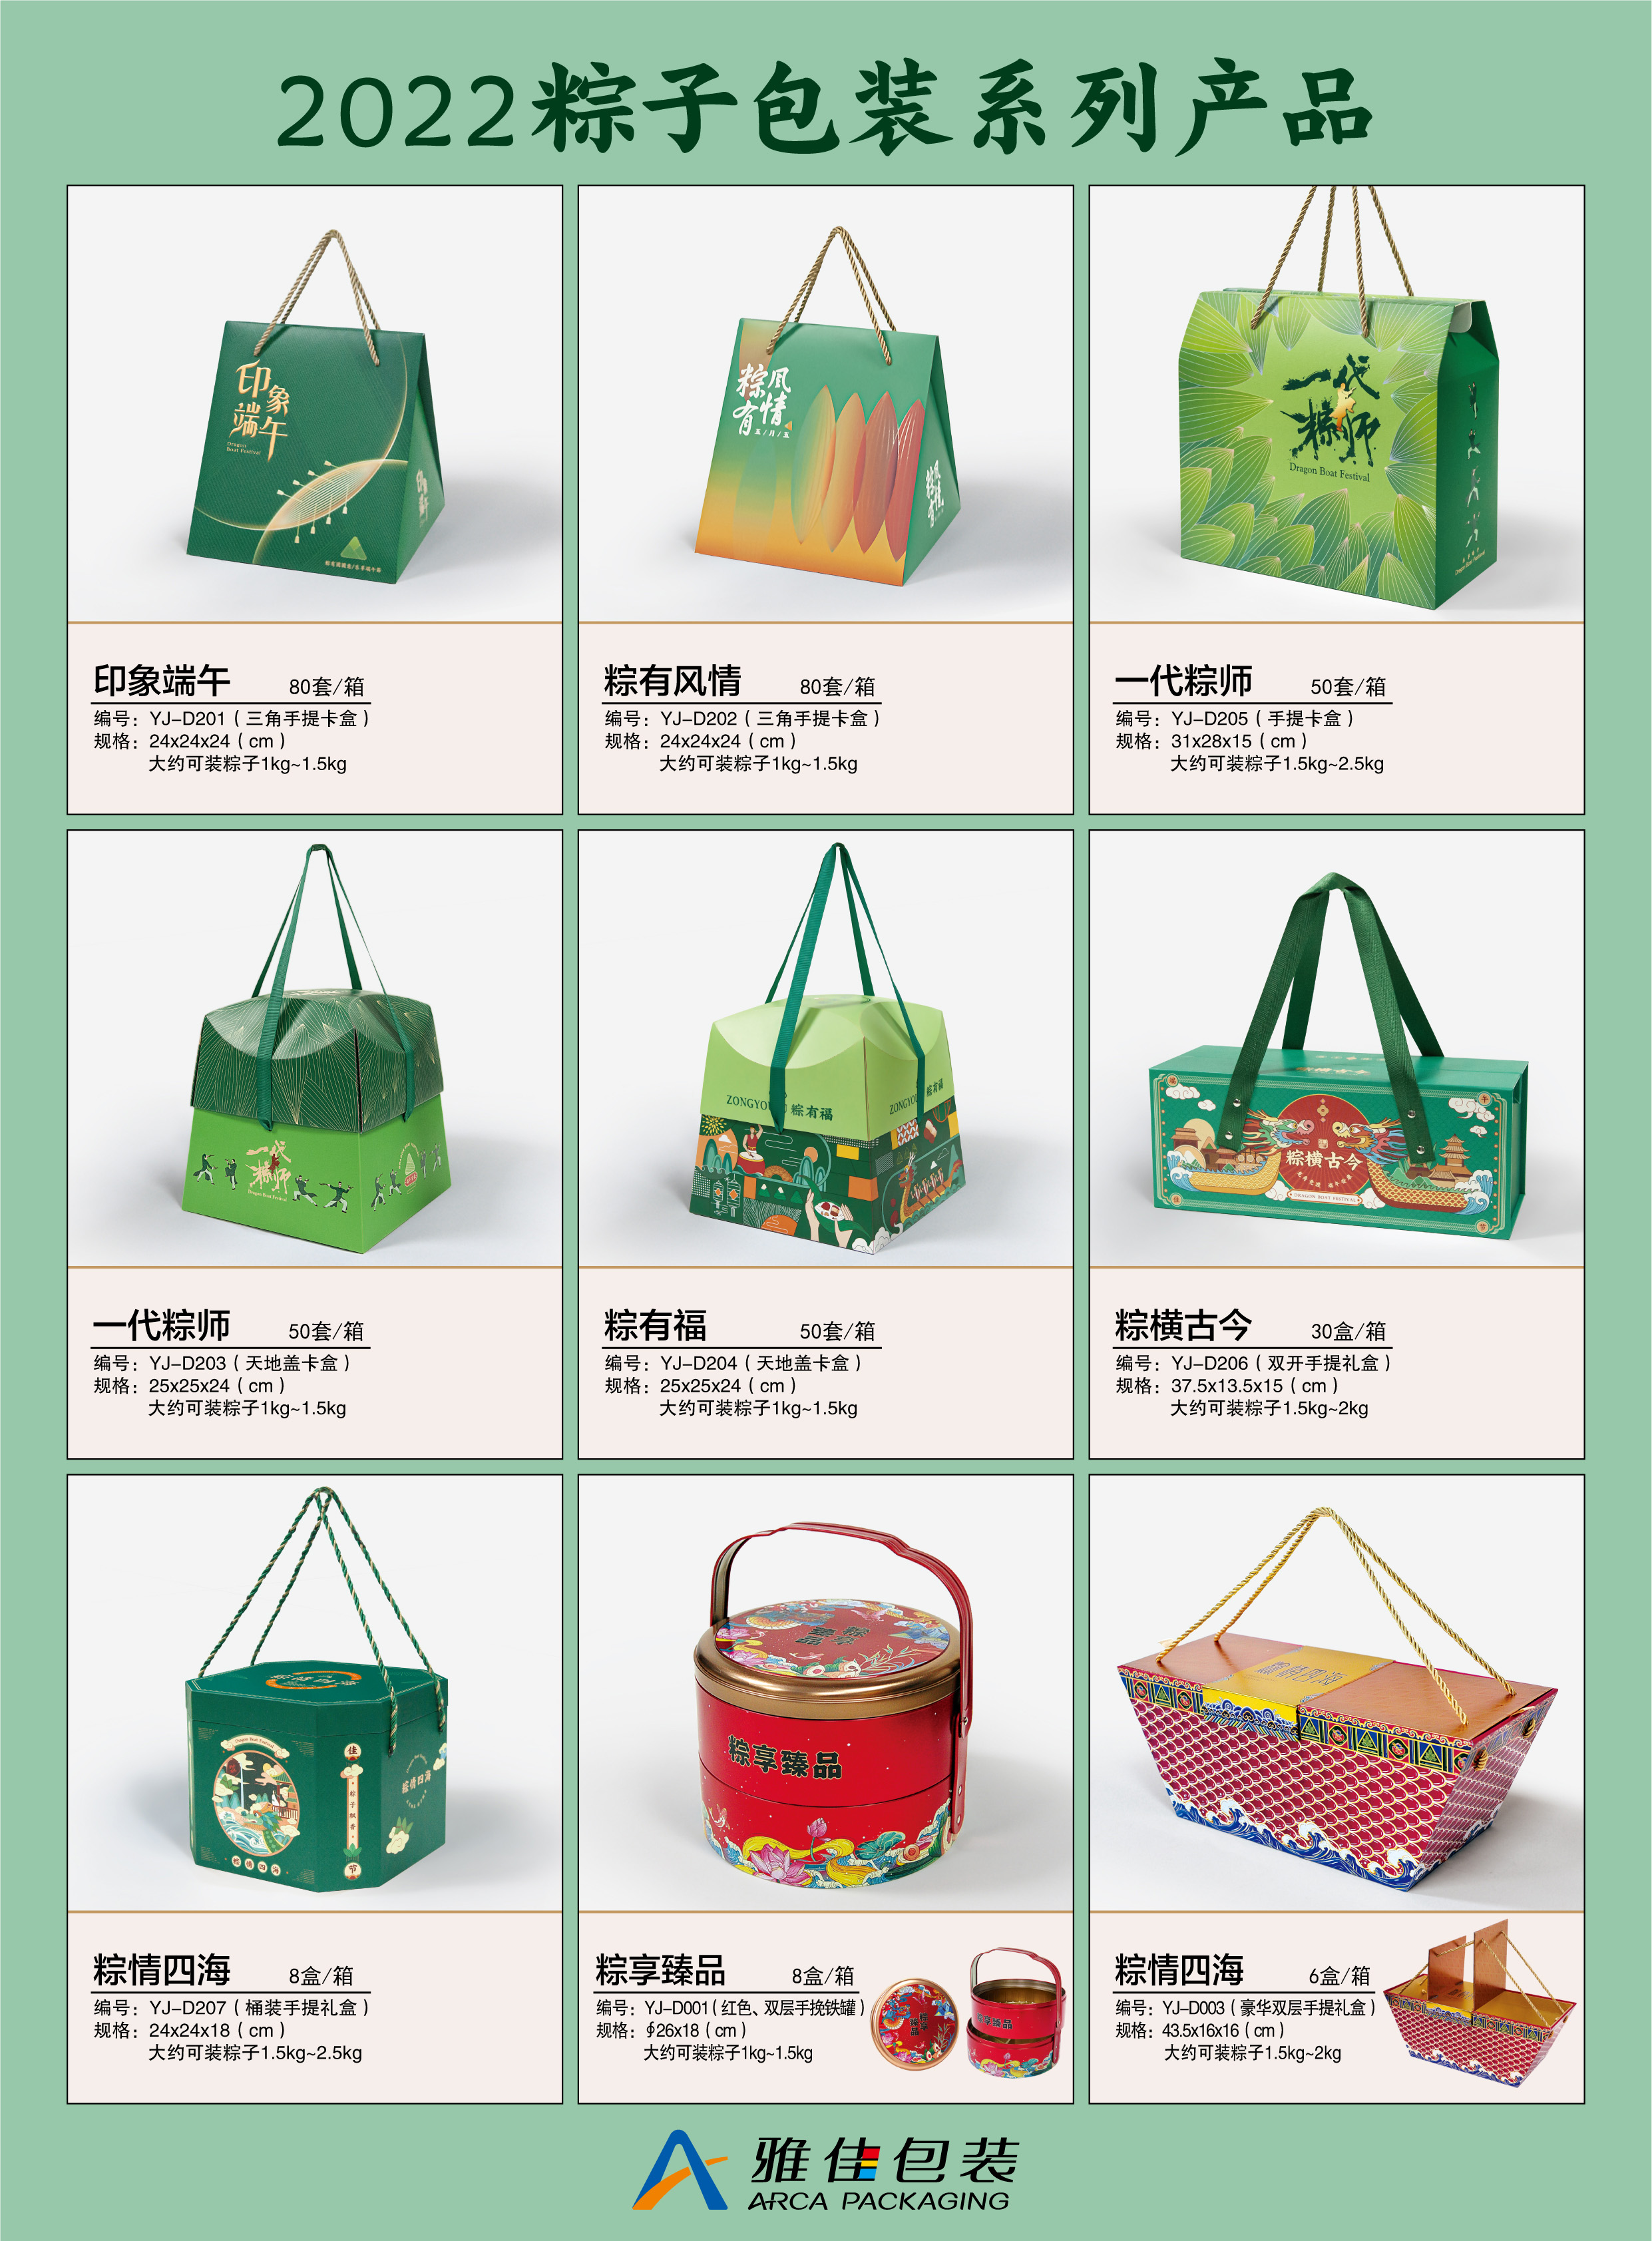 深圳雅佳设计包装有限公司提供包装创意、设计、印刷、印后加工及礼盒生产服务